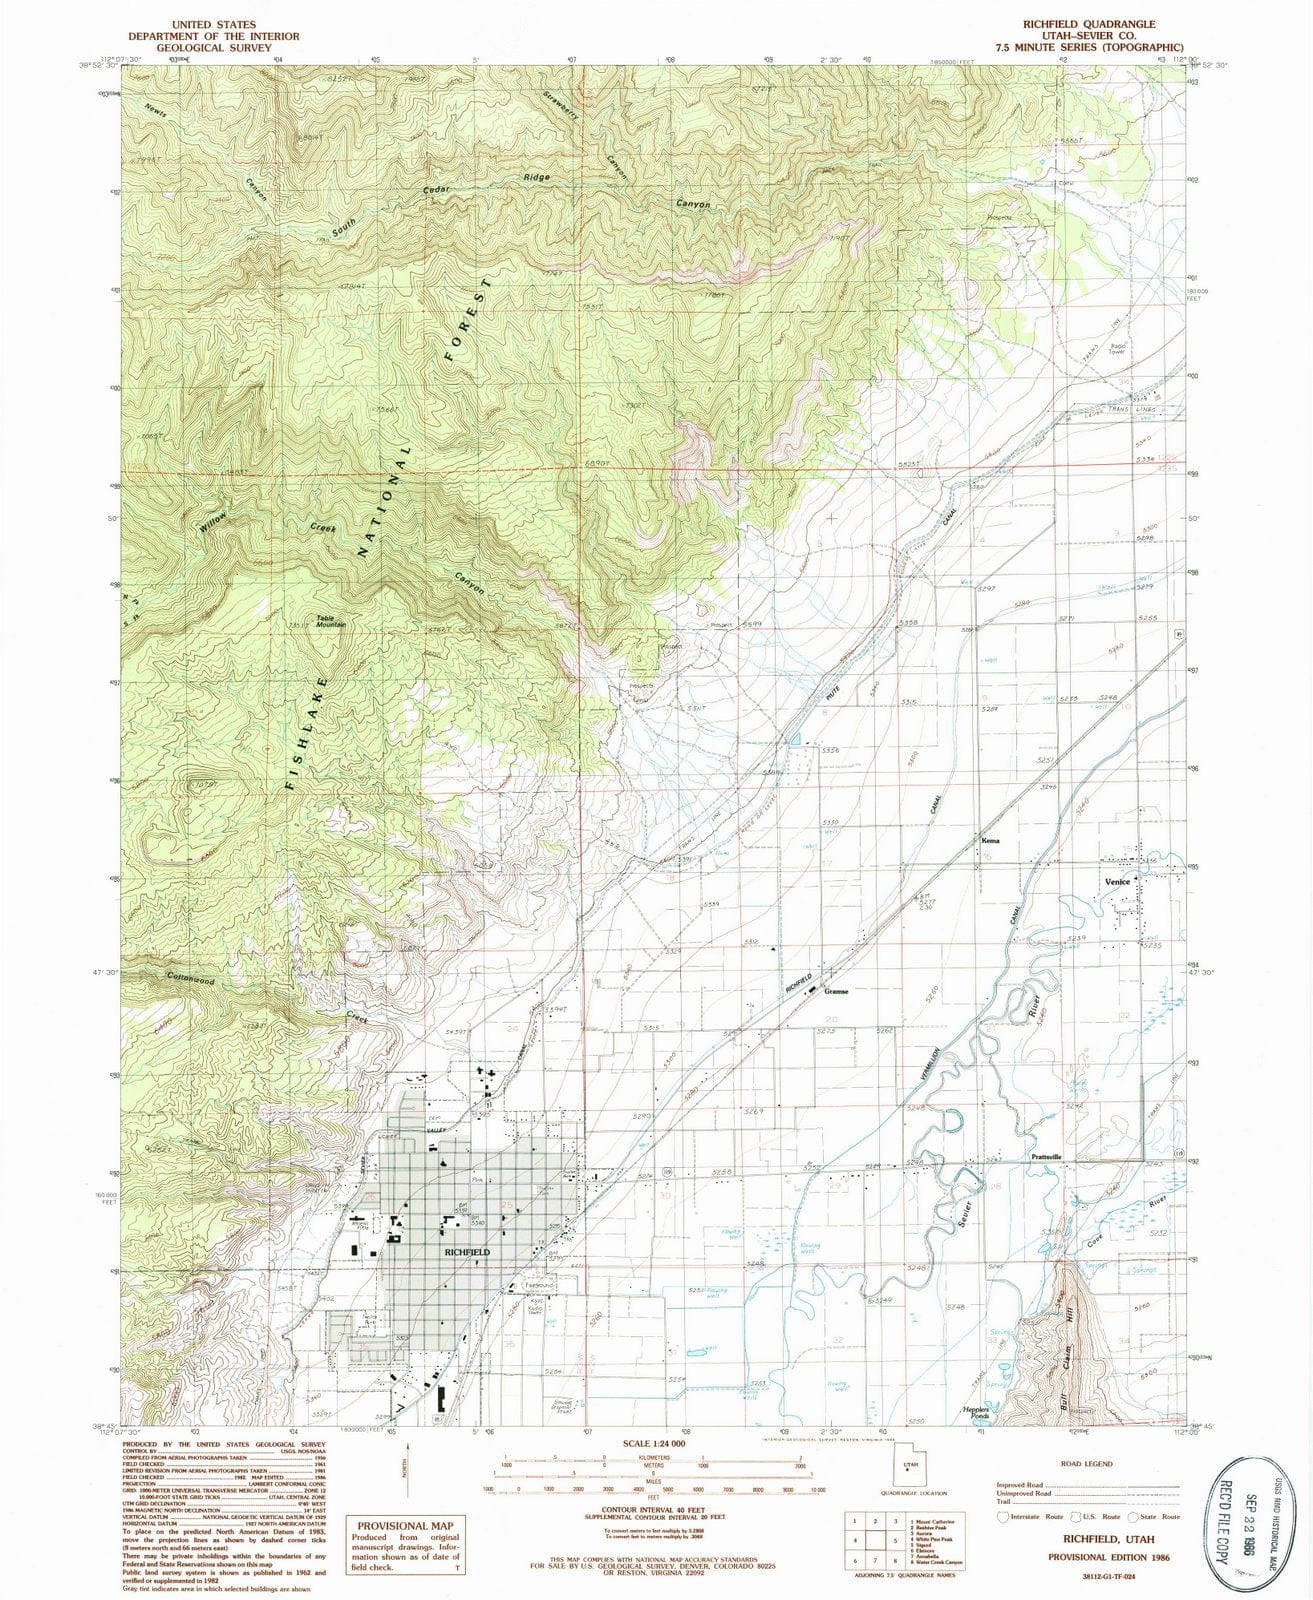 1986 Richfield, UT - Utah - USGS Topographic Map